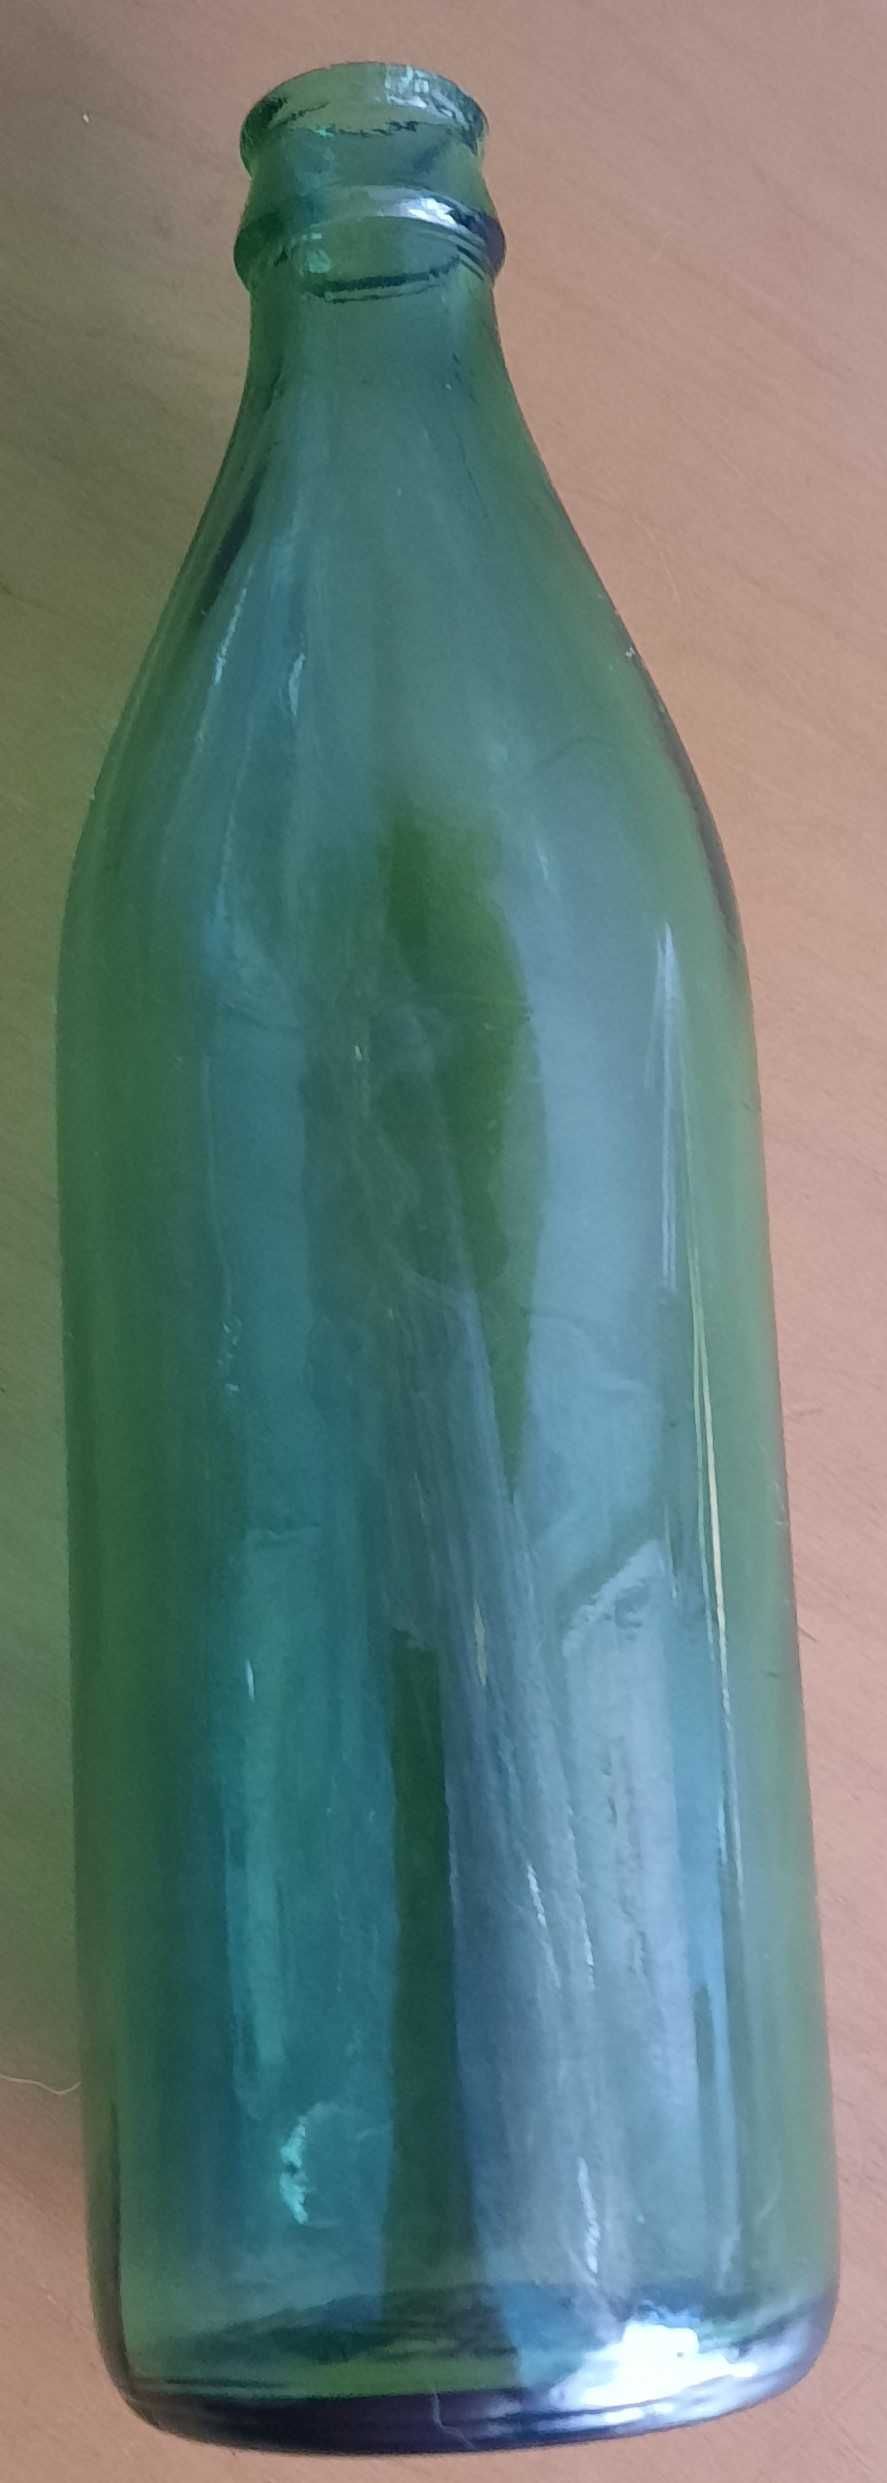 Бутылка лимонадная, 0,5 литра, 1992 года выпуска